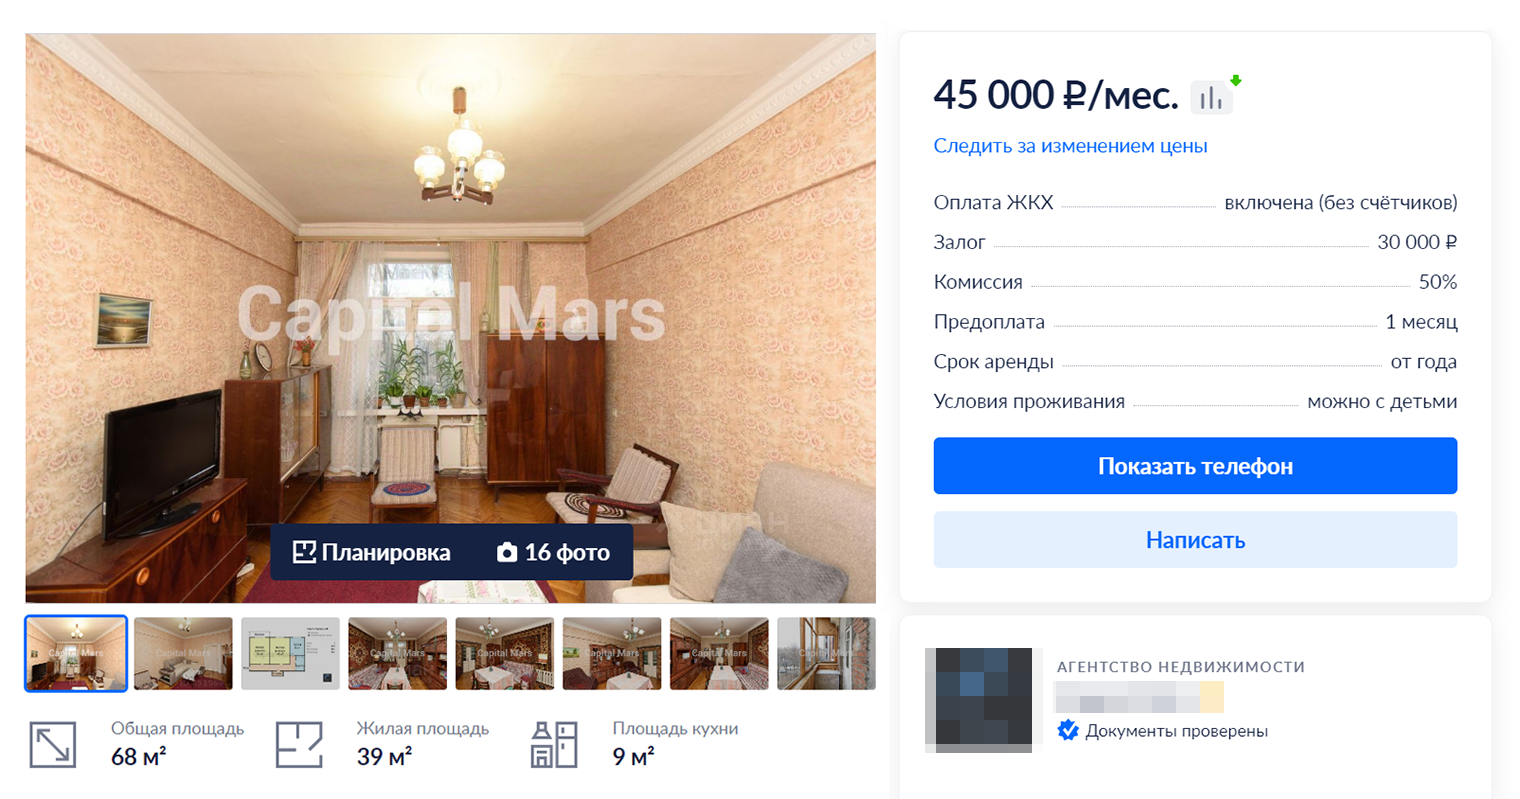 Несмотря на то что в этой квартире ремонт еще хуже, она дороже, так как здесь 68 м², а не 43 м². Источник: cian.ru